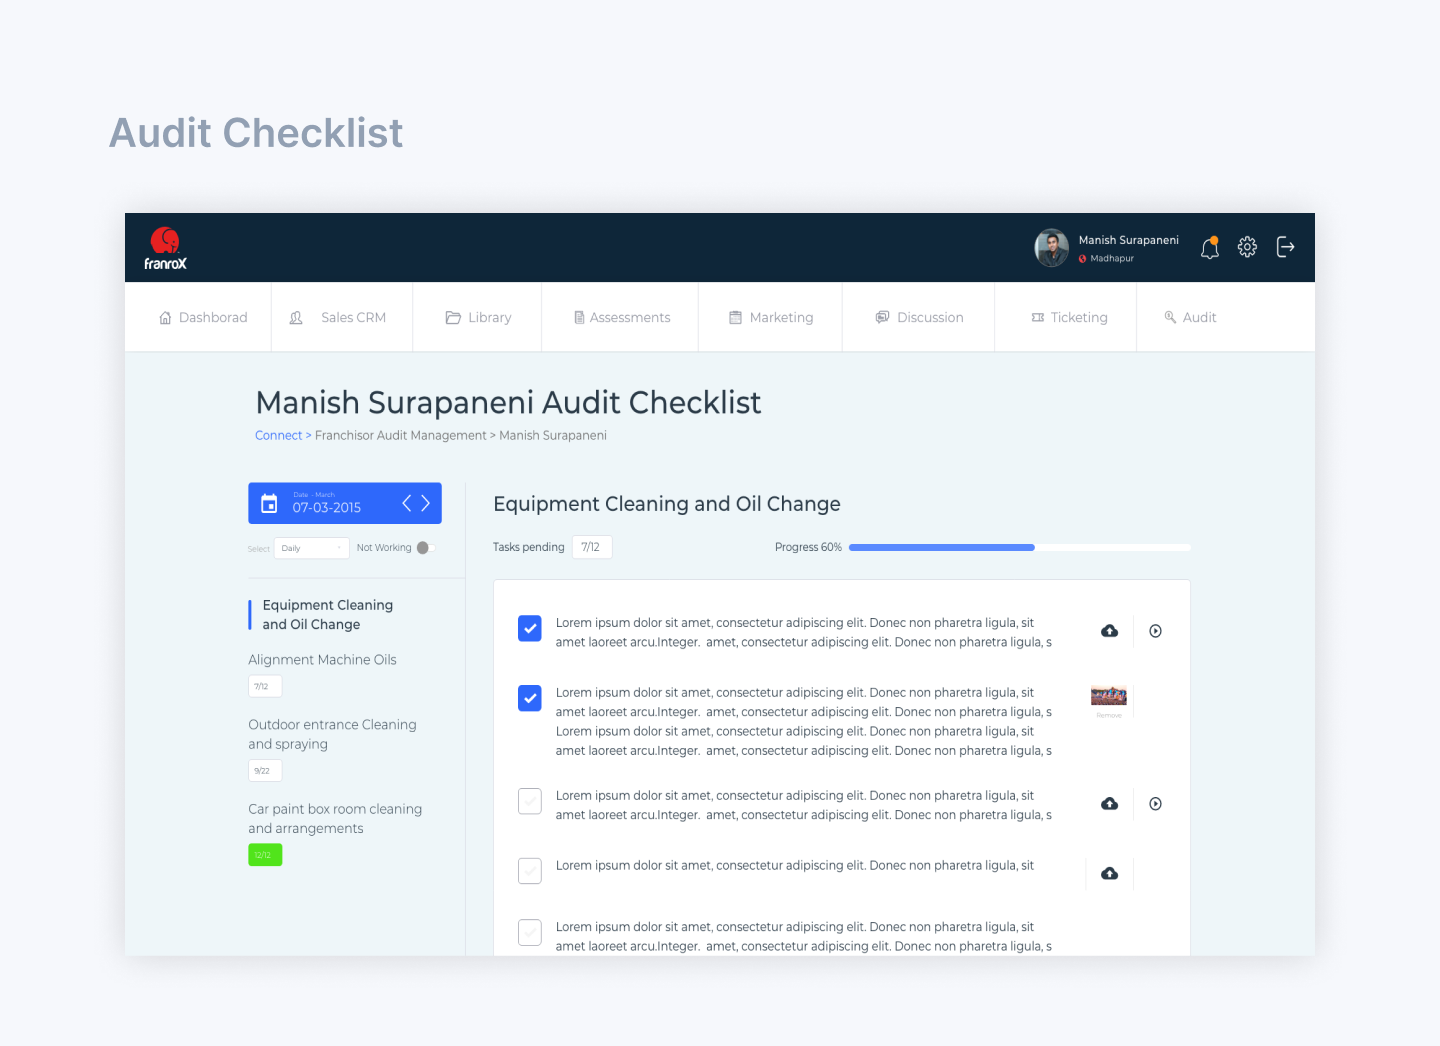 Carz.4 audit checklist